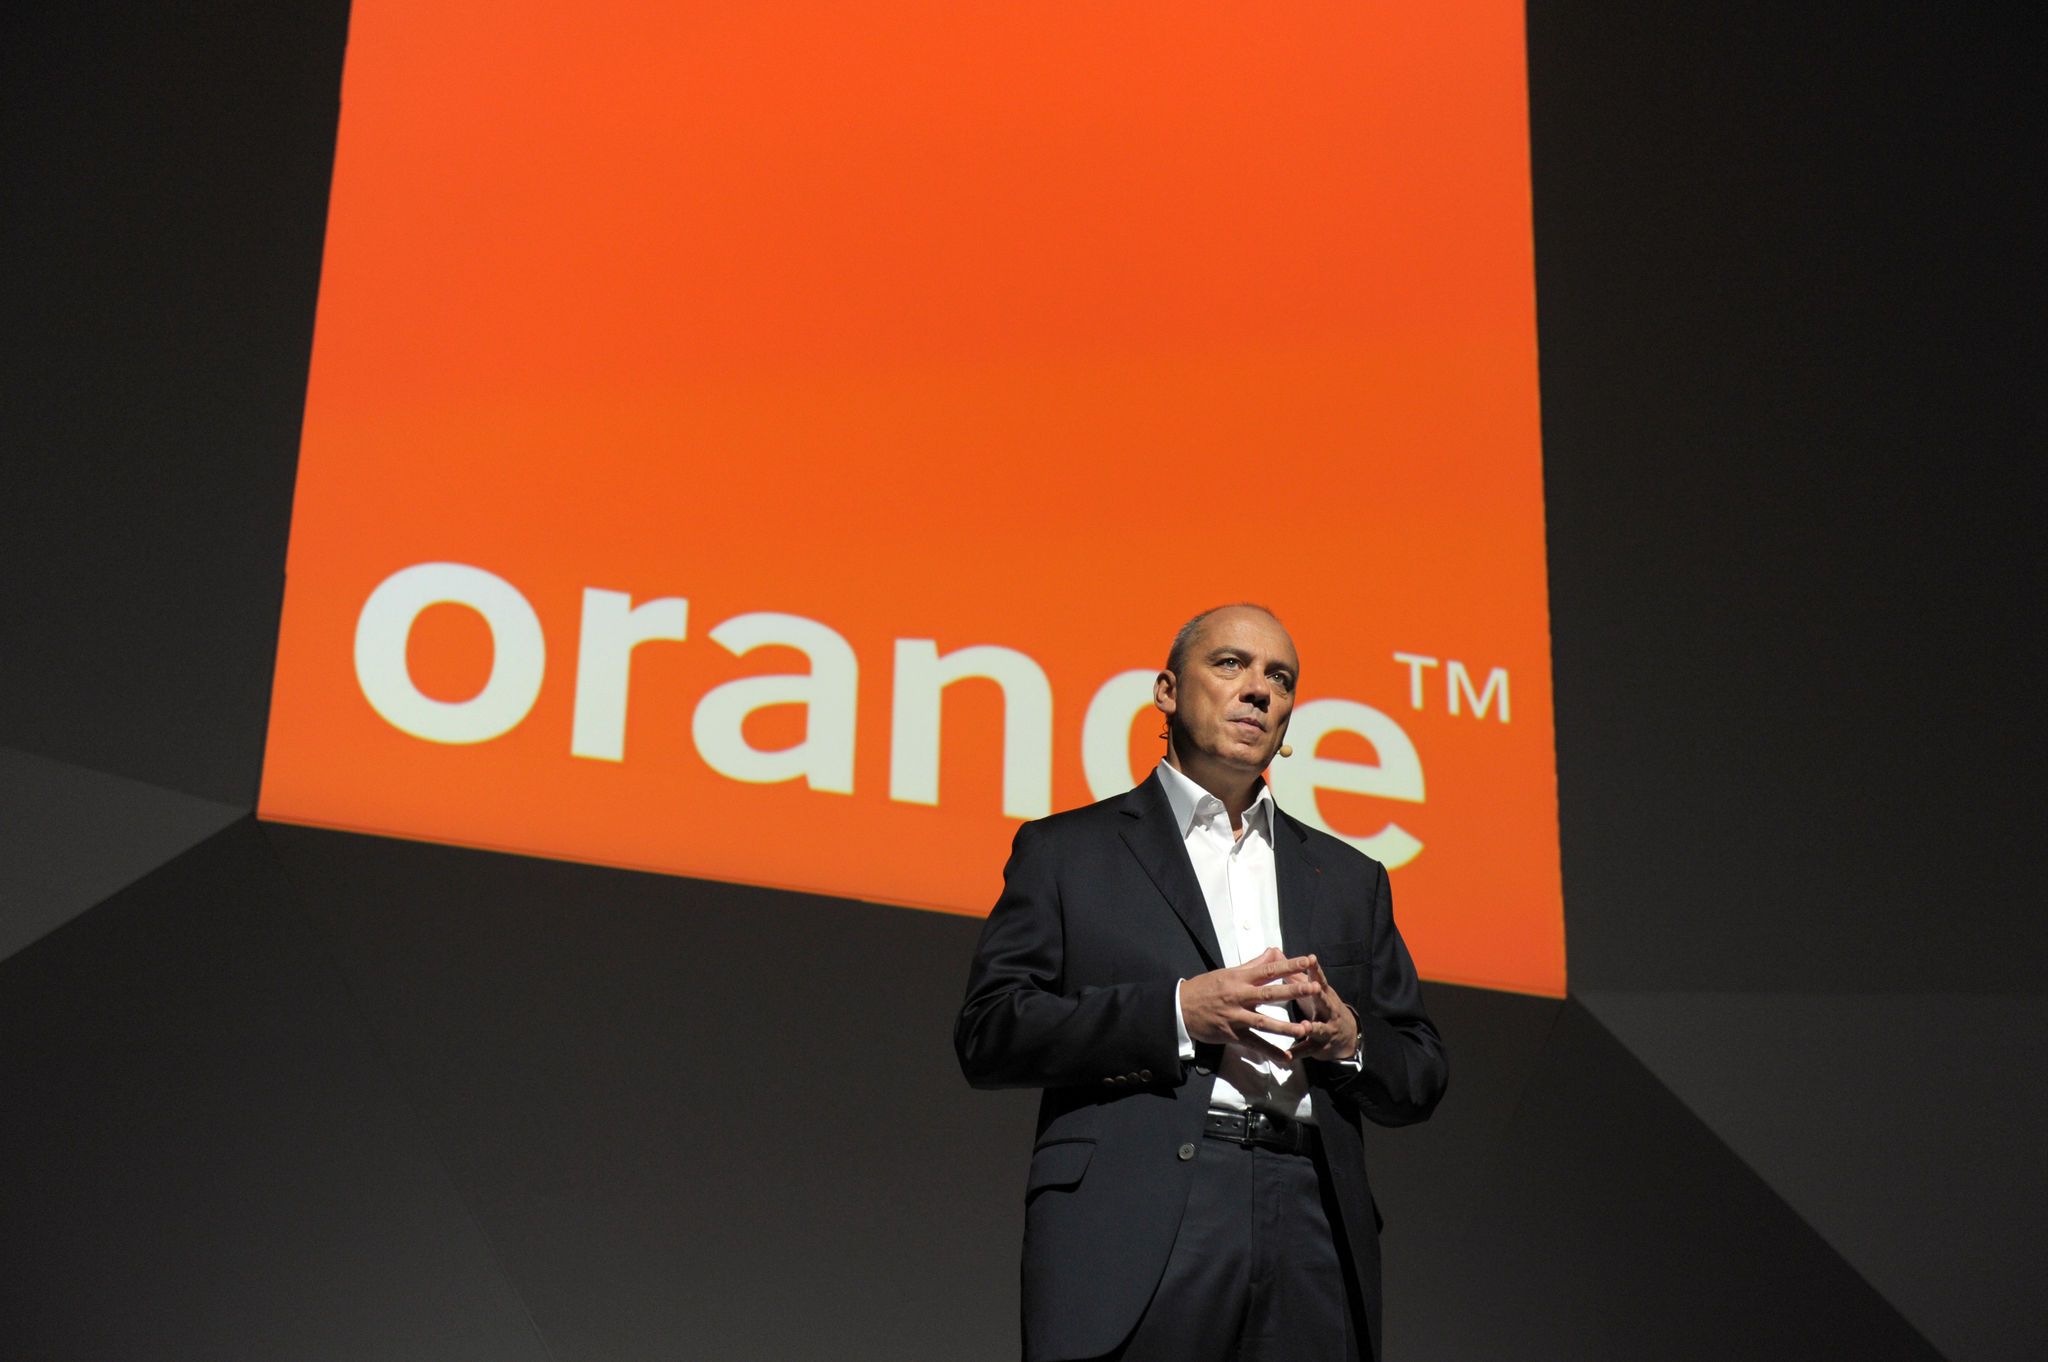 Orange prépare une clé HDMI pour concurrencer le Chromecast de Google